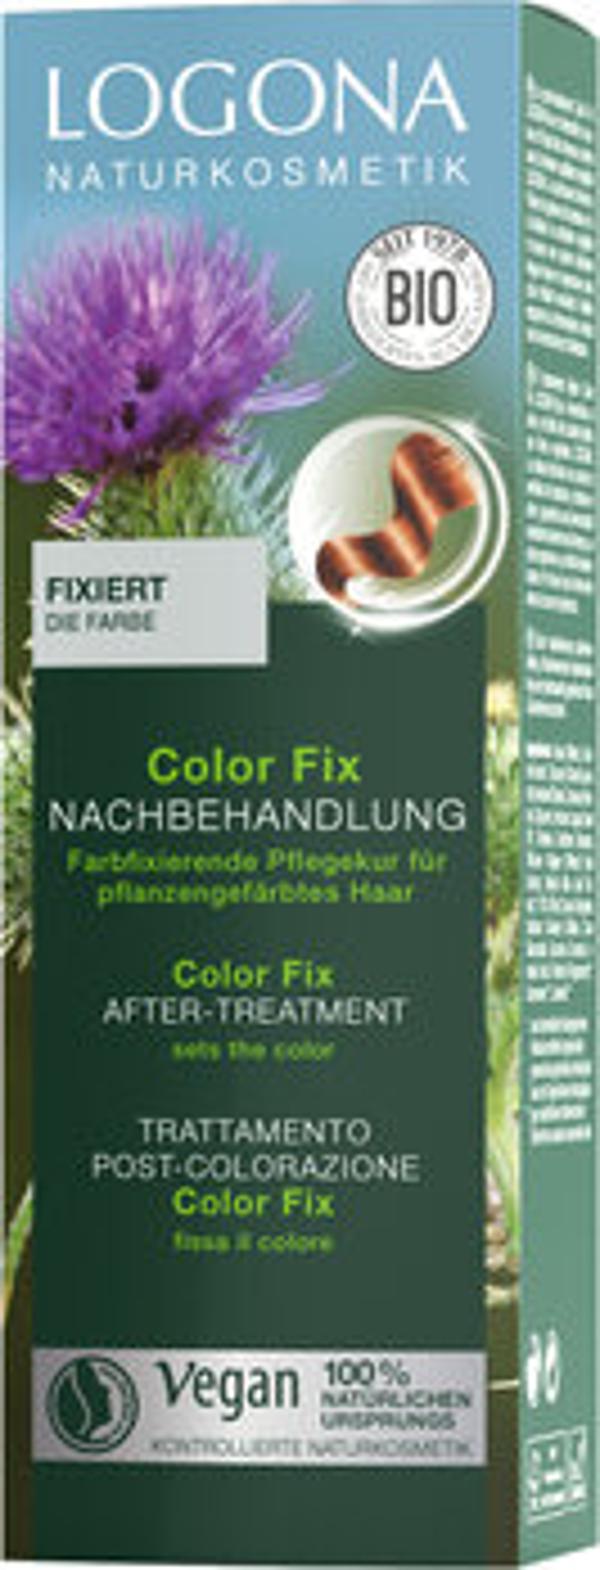 Produktfoto zu Color Fix Nachbehandlung - nach Haarfärbung